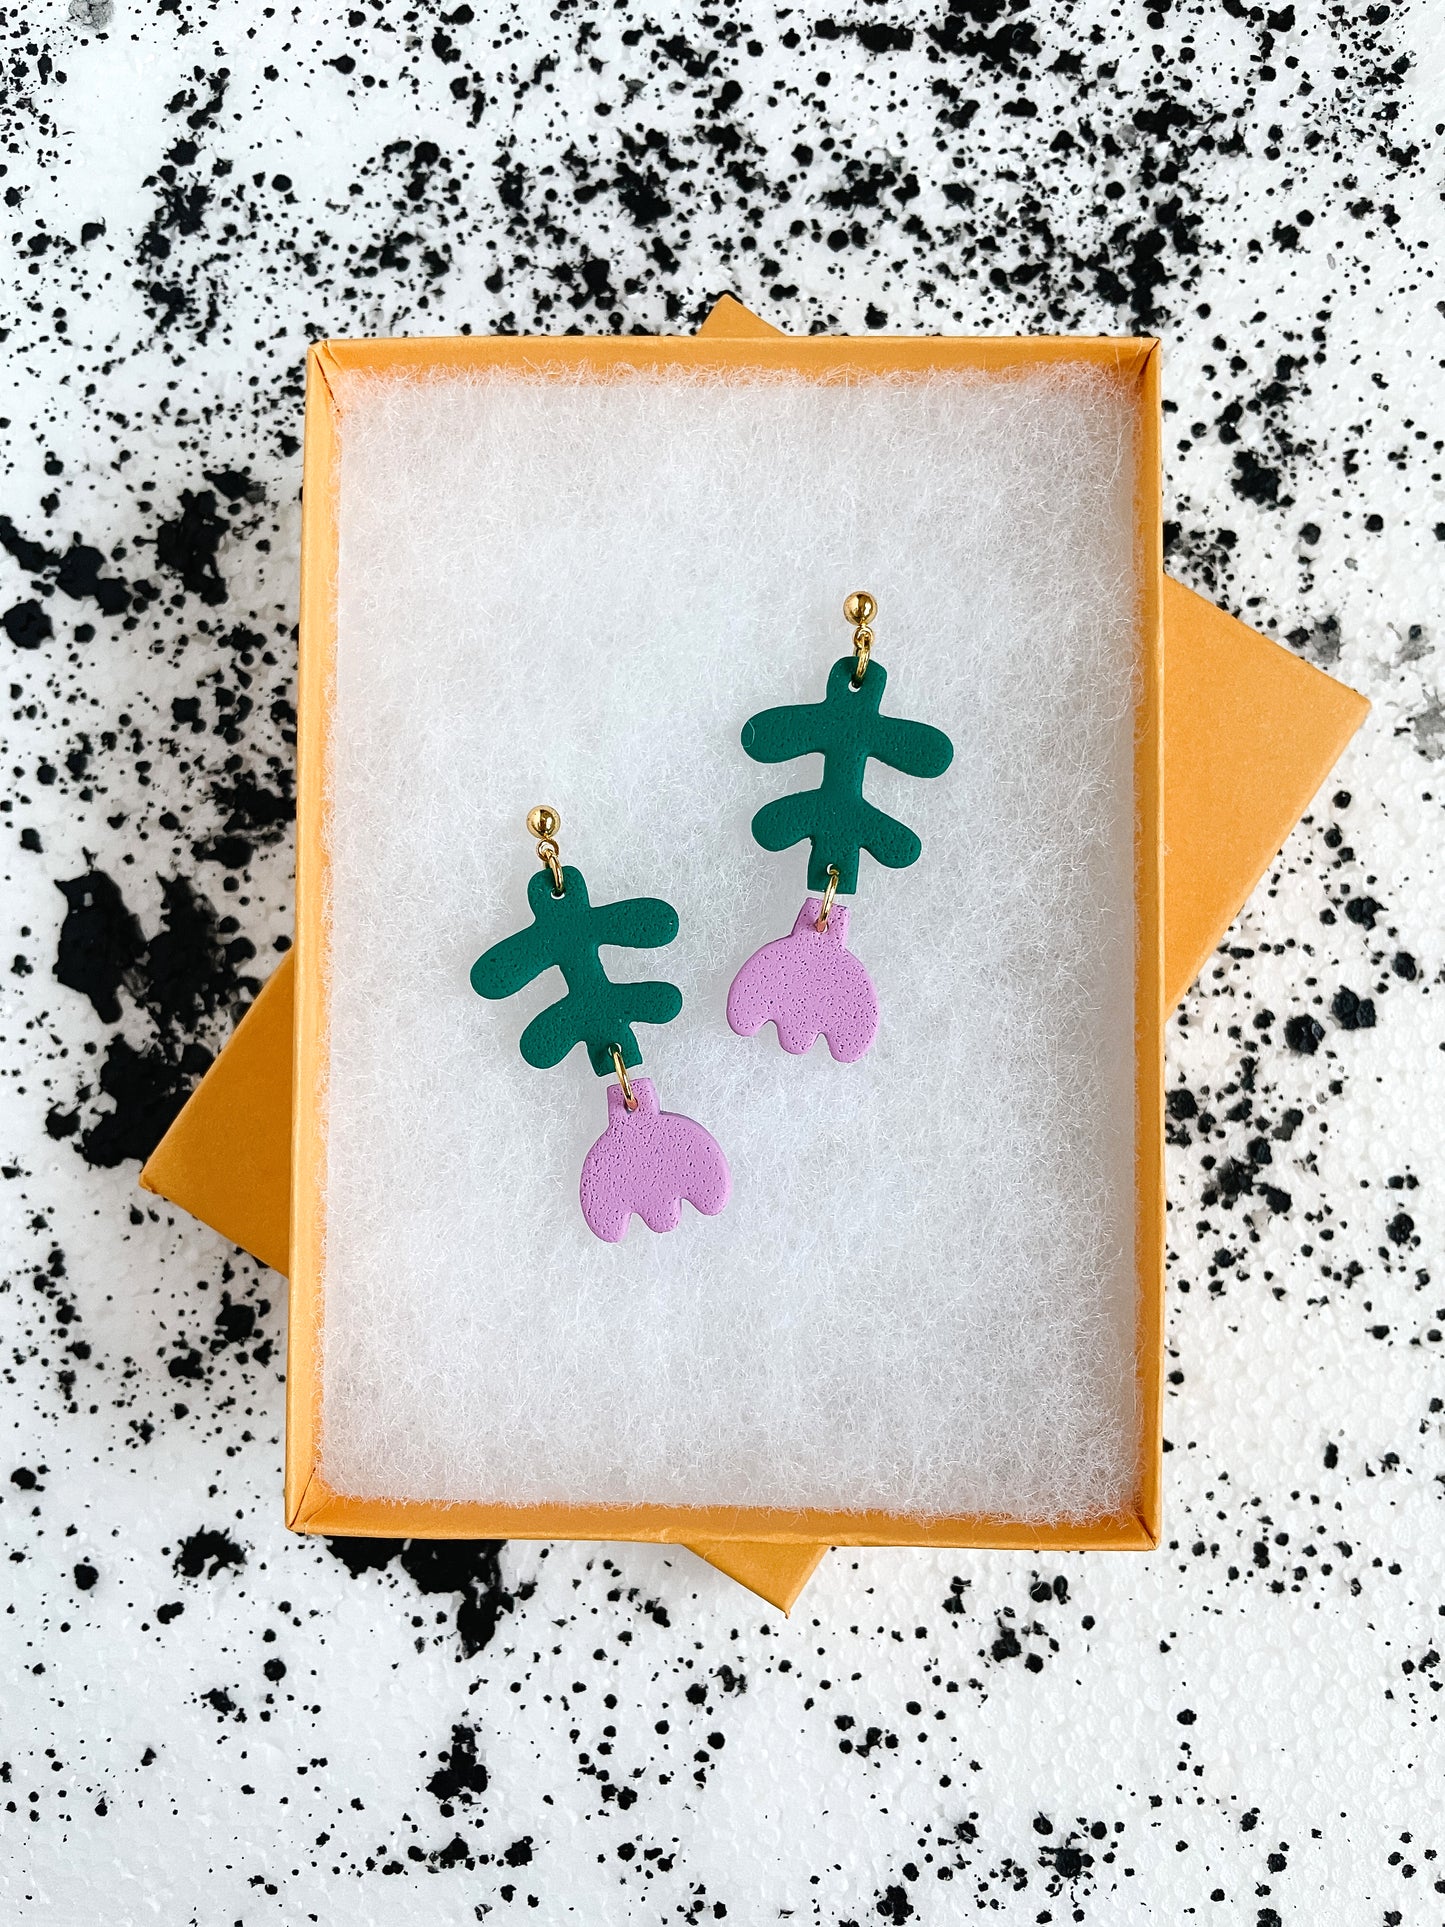 Purple Flower Drop Earrings